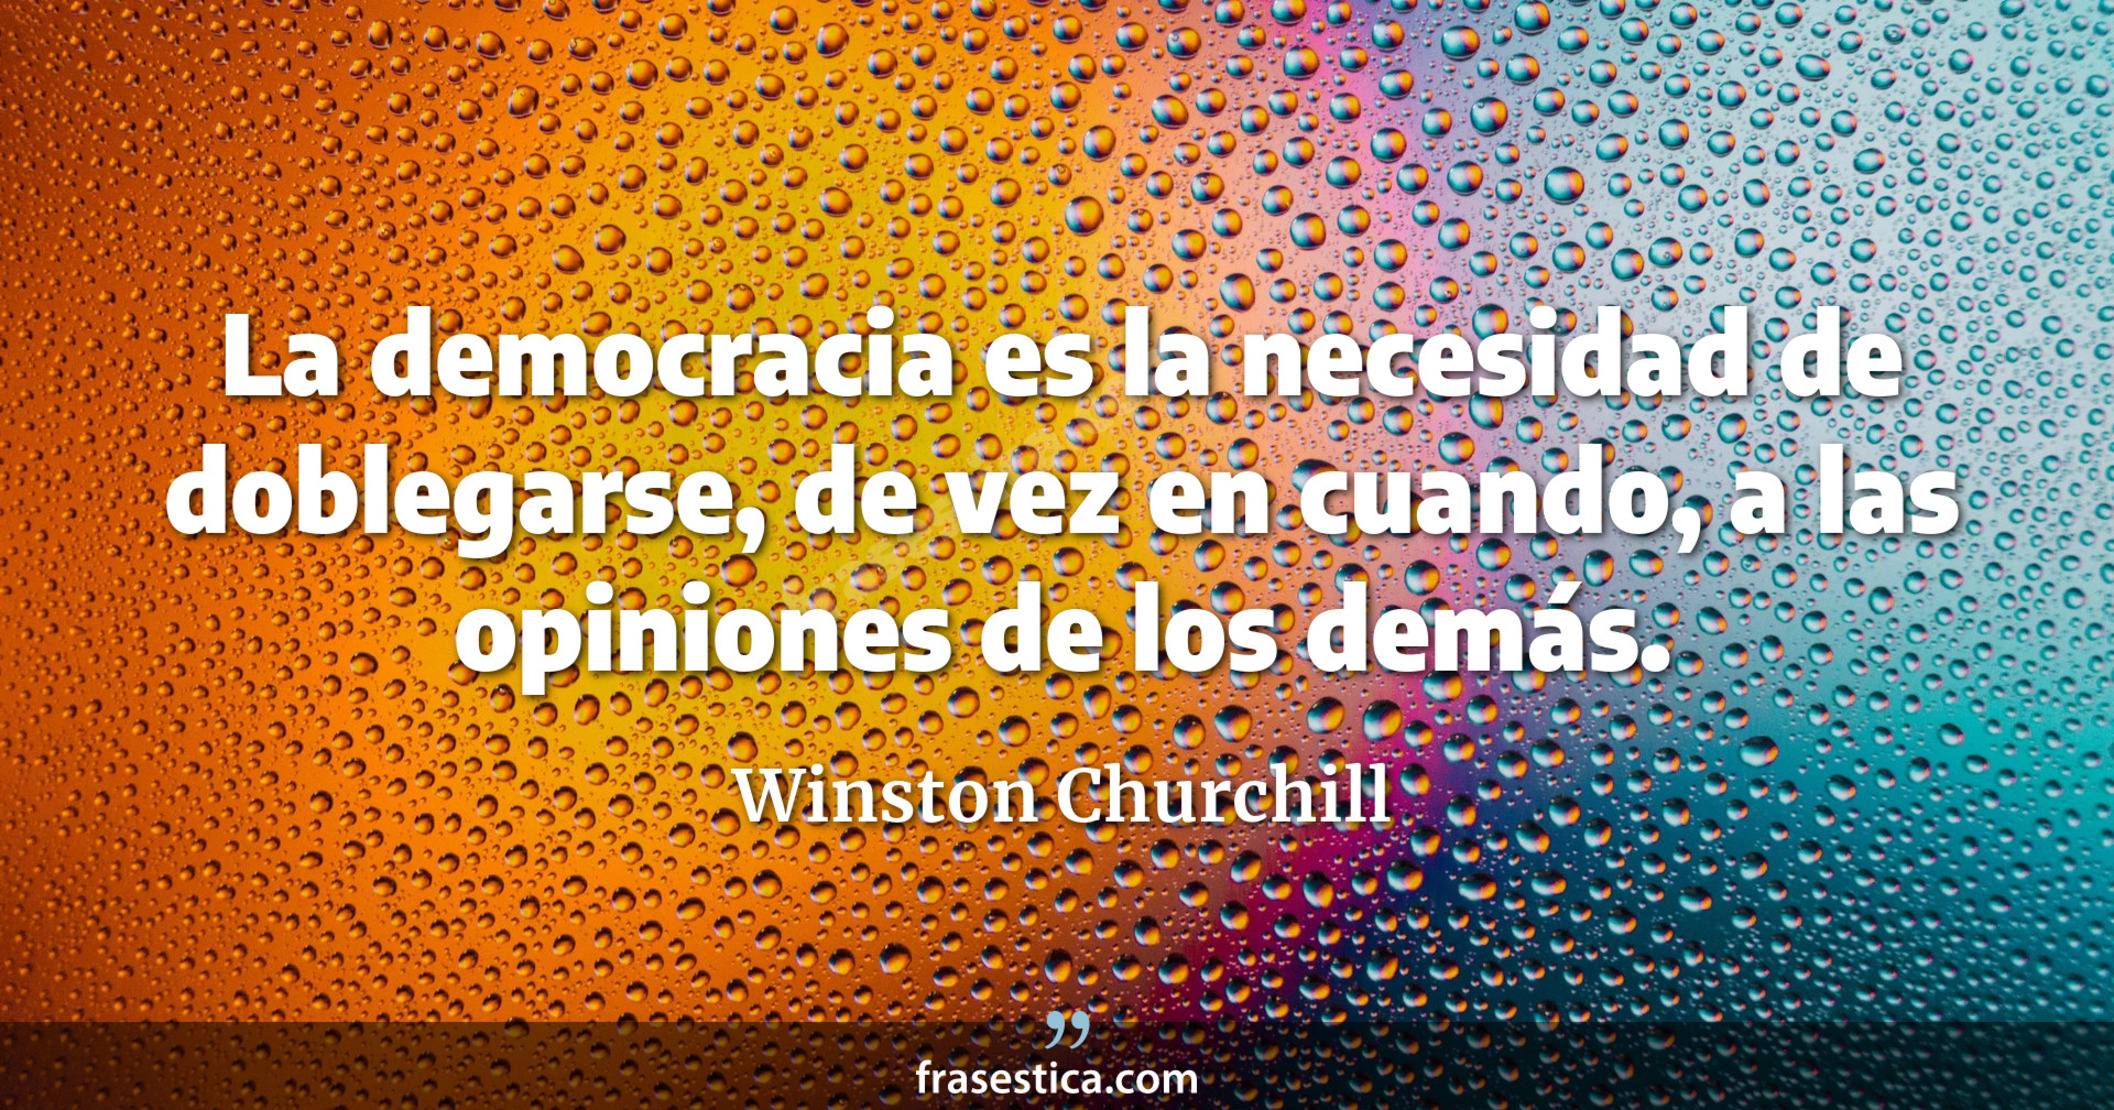 La democracia es la necesidad de doblegarse, de vez en cuando, a las opiniones de los demás. - Winston Churchill